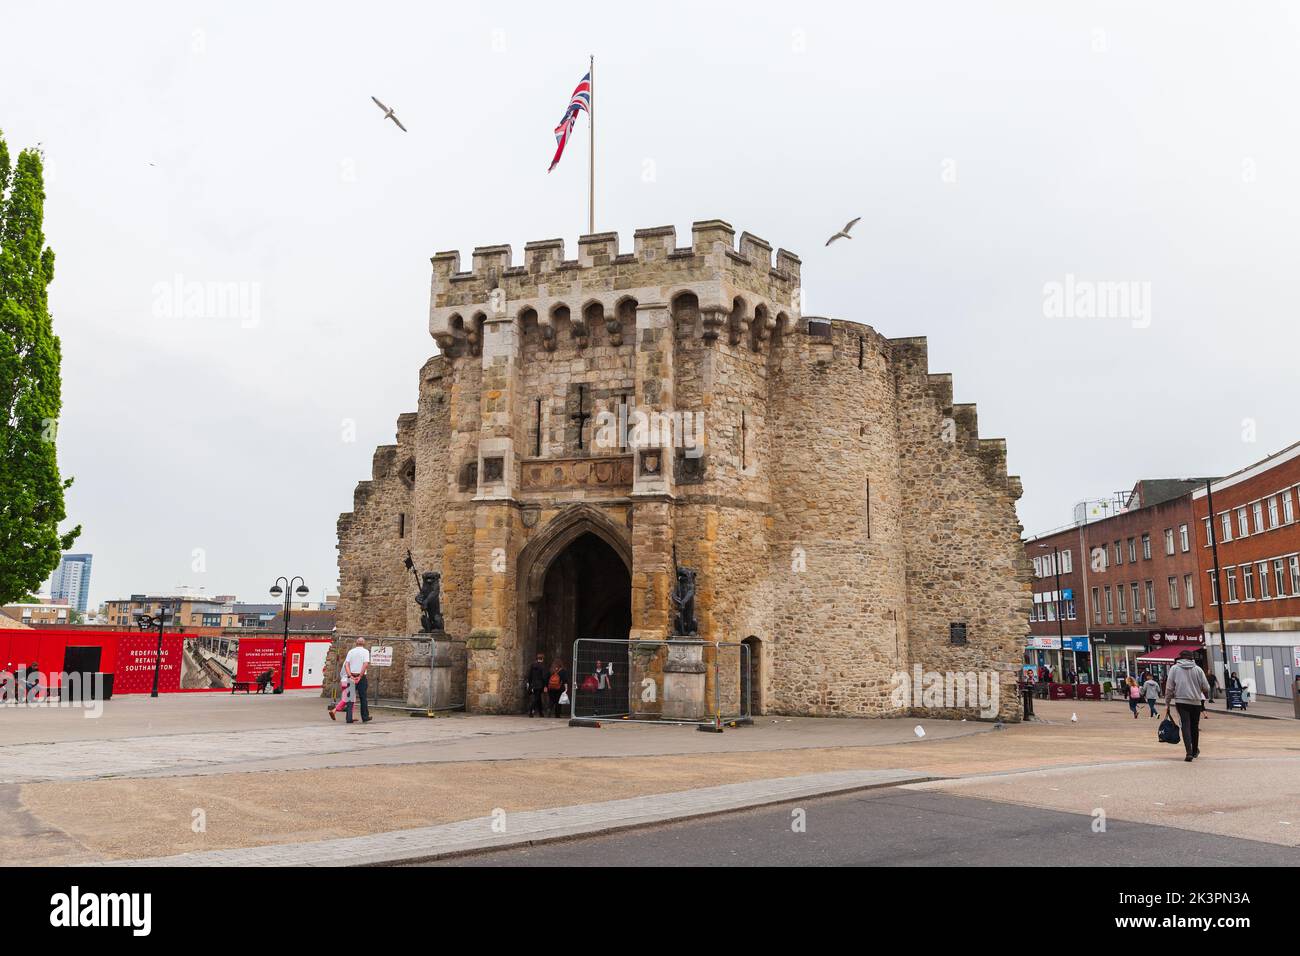 Southampton, Royaume-Uni - 23 avril 2019 : le Bargate est un portier médiéval de la ville de Southampton, Angleterre Banque D'Images